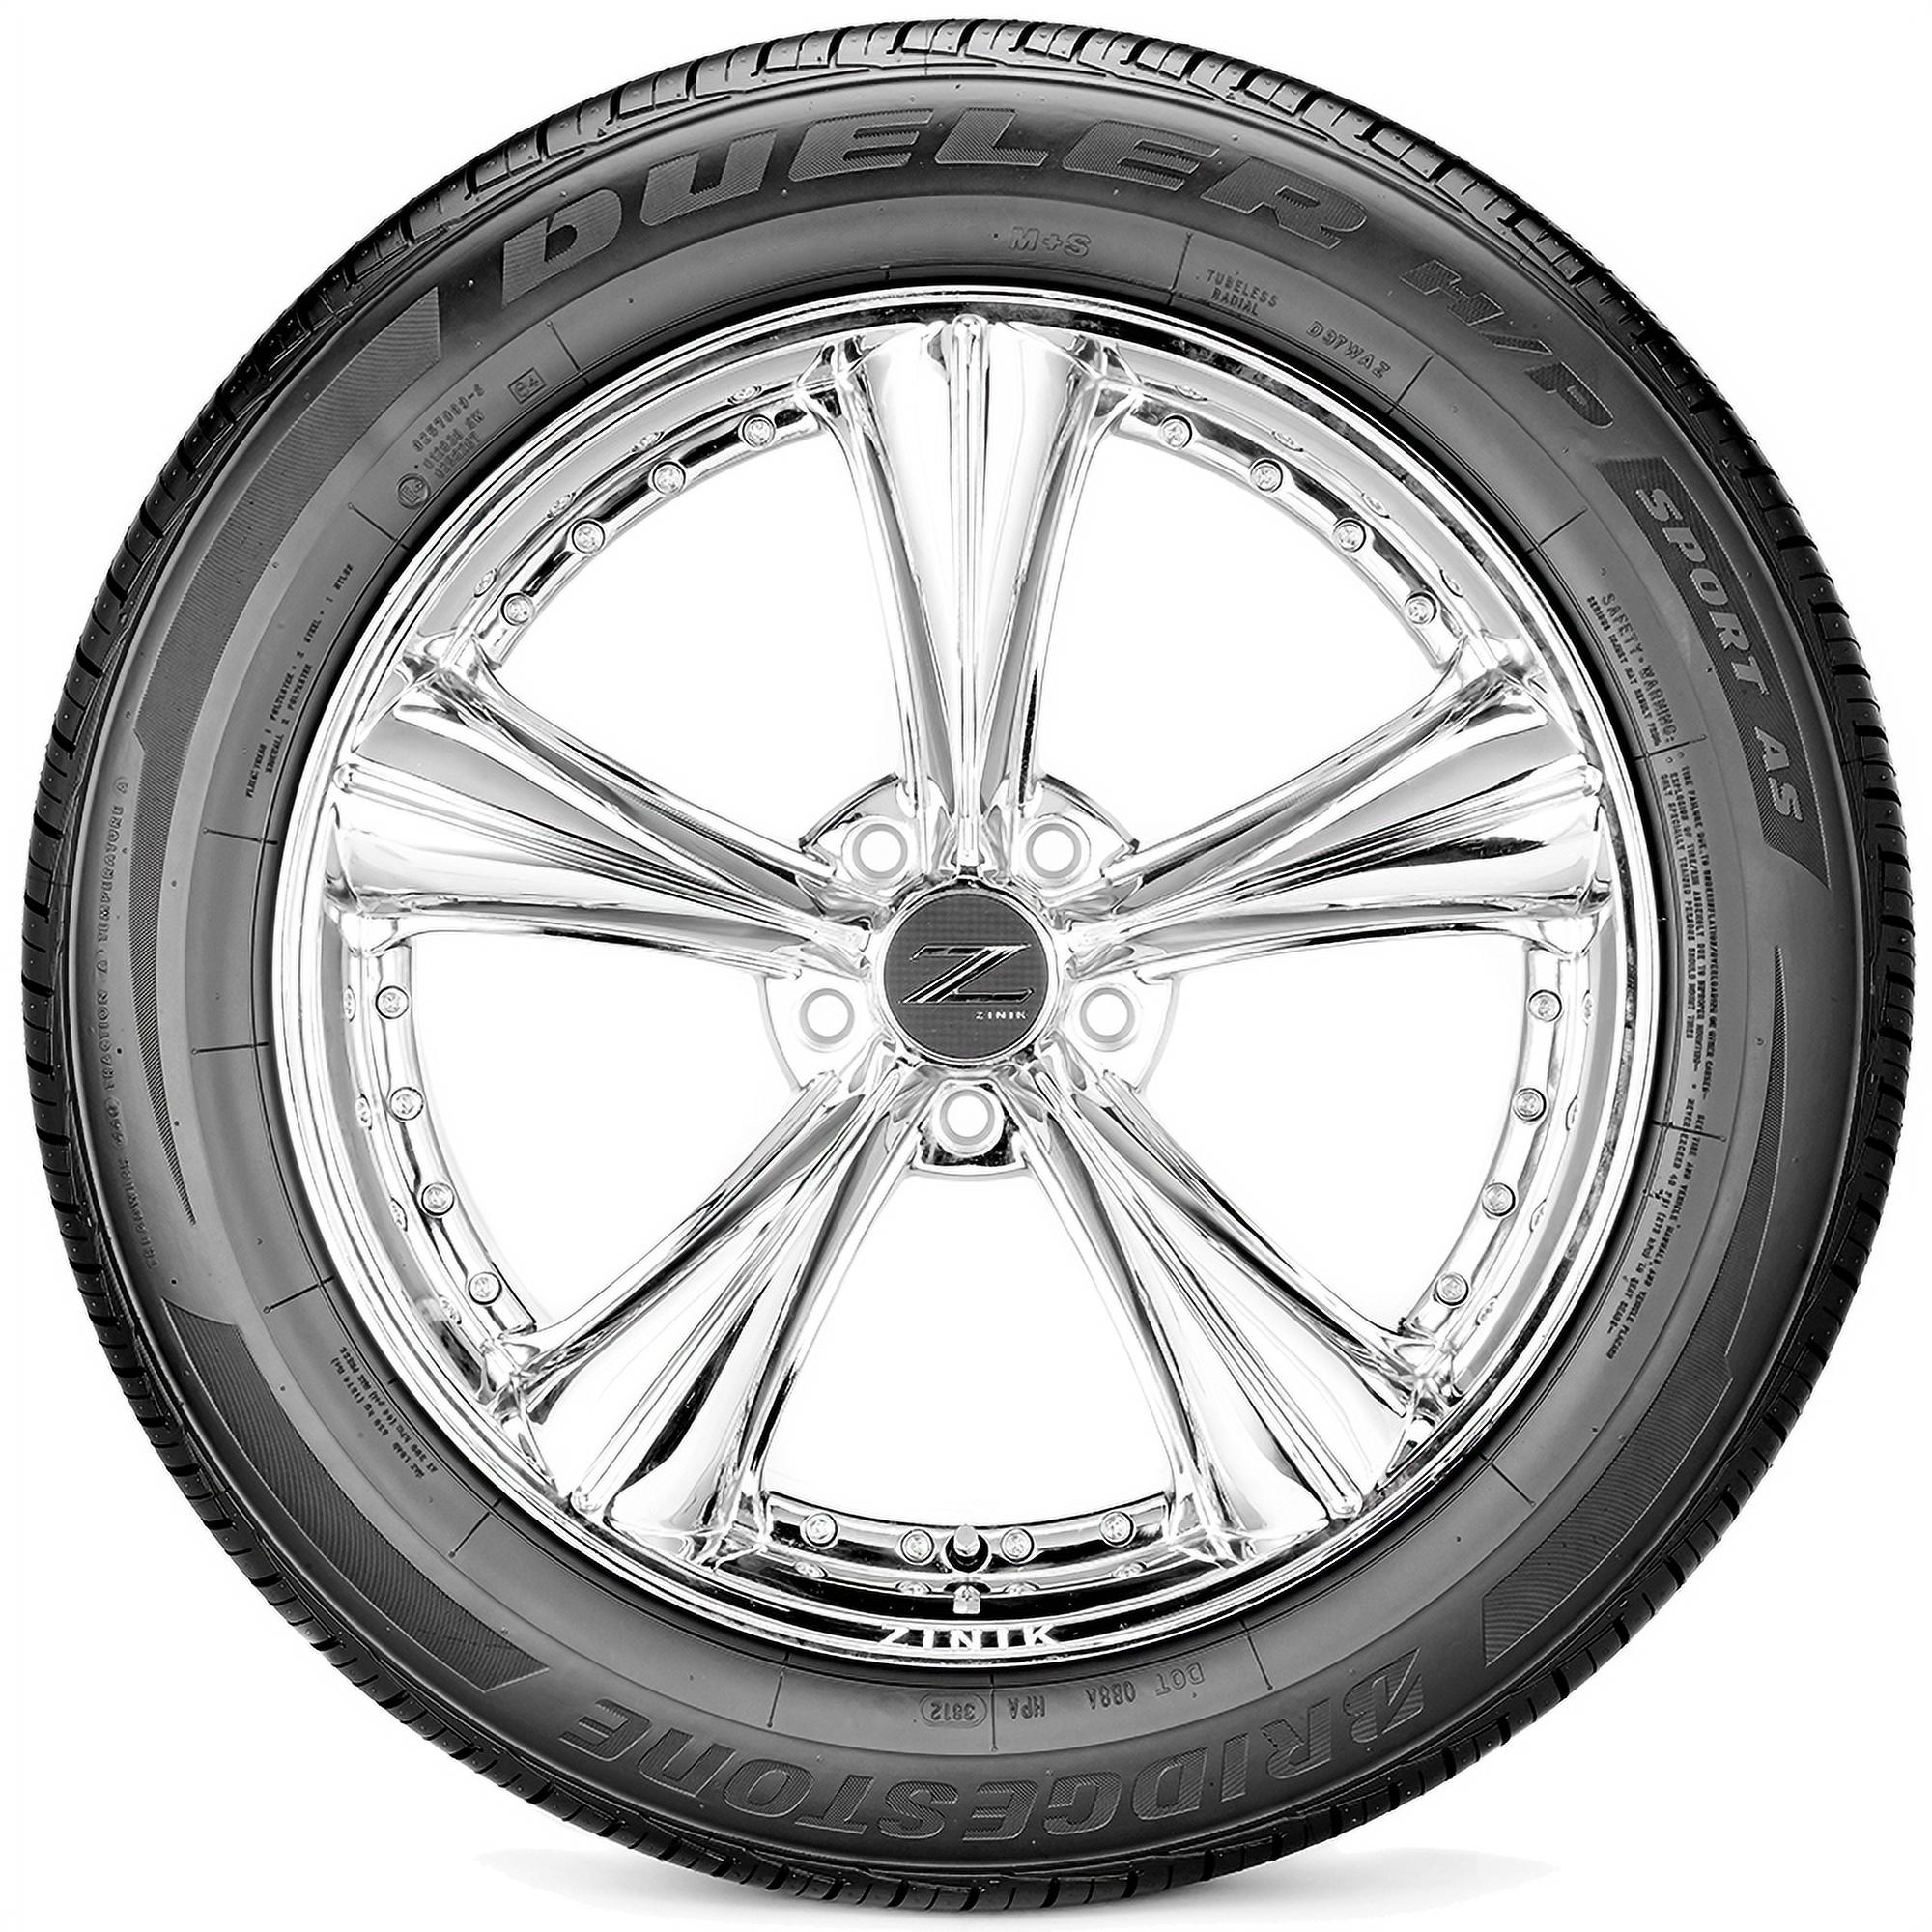 Bridgestone Dueler H/T 470 225/65R17 Tire - image 3 of 3